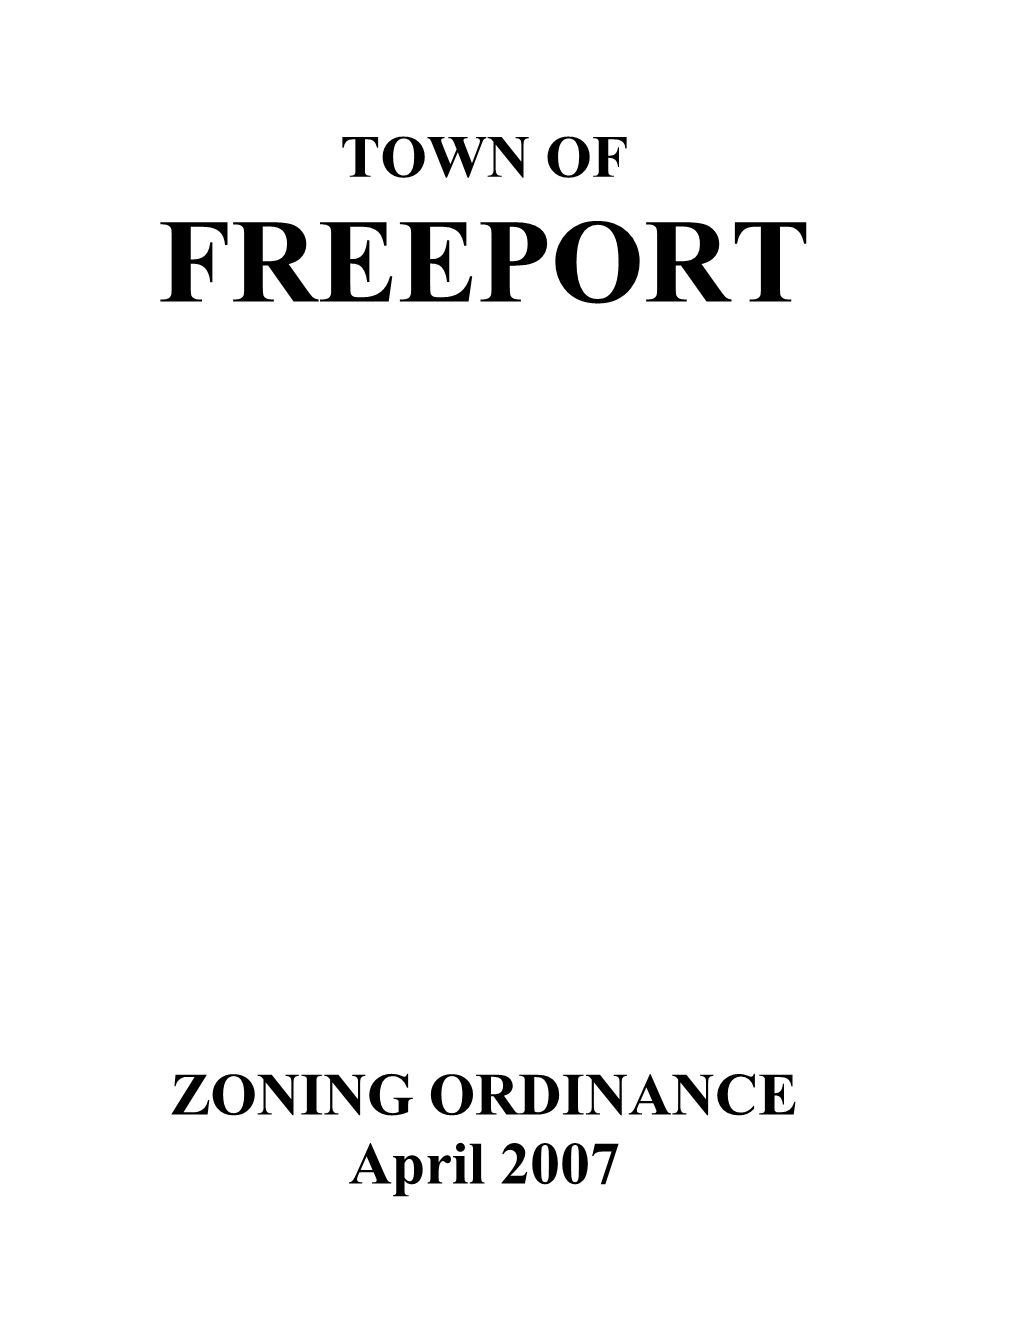 Freeport Zoning Ordinance